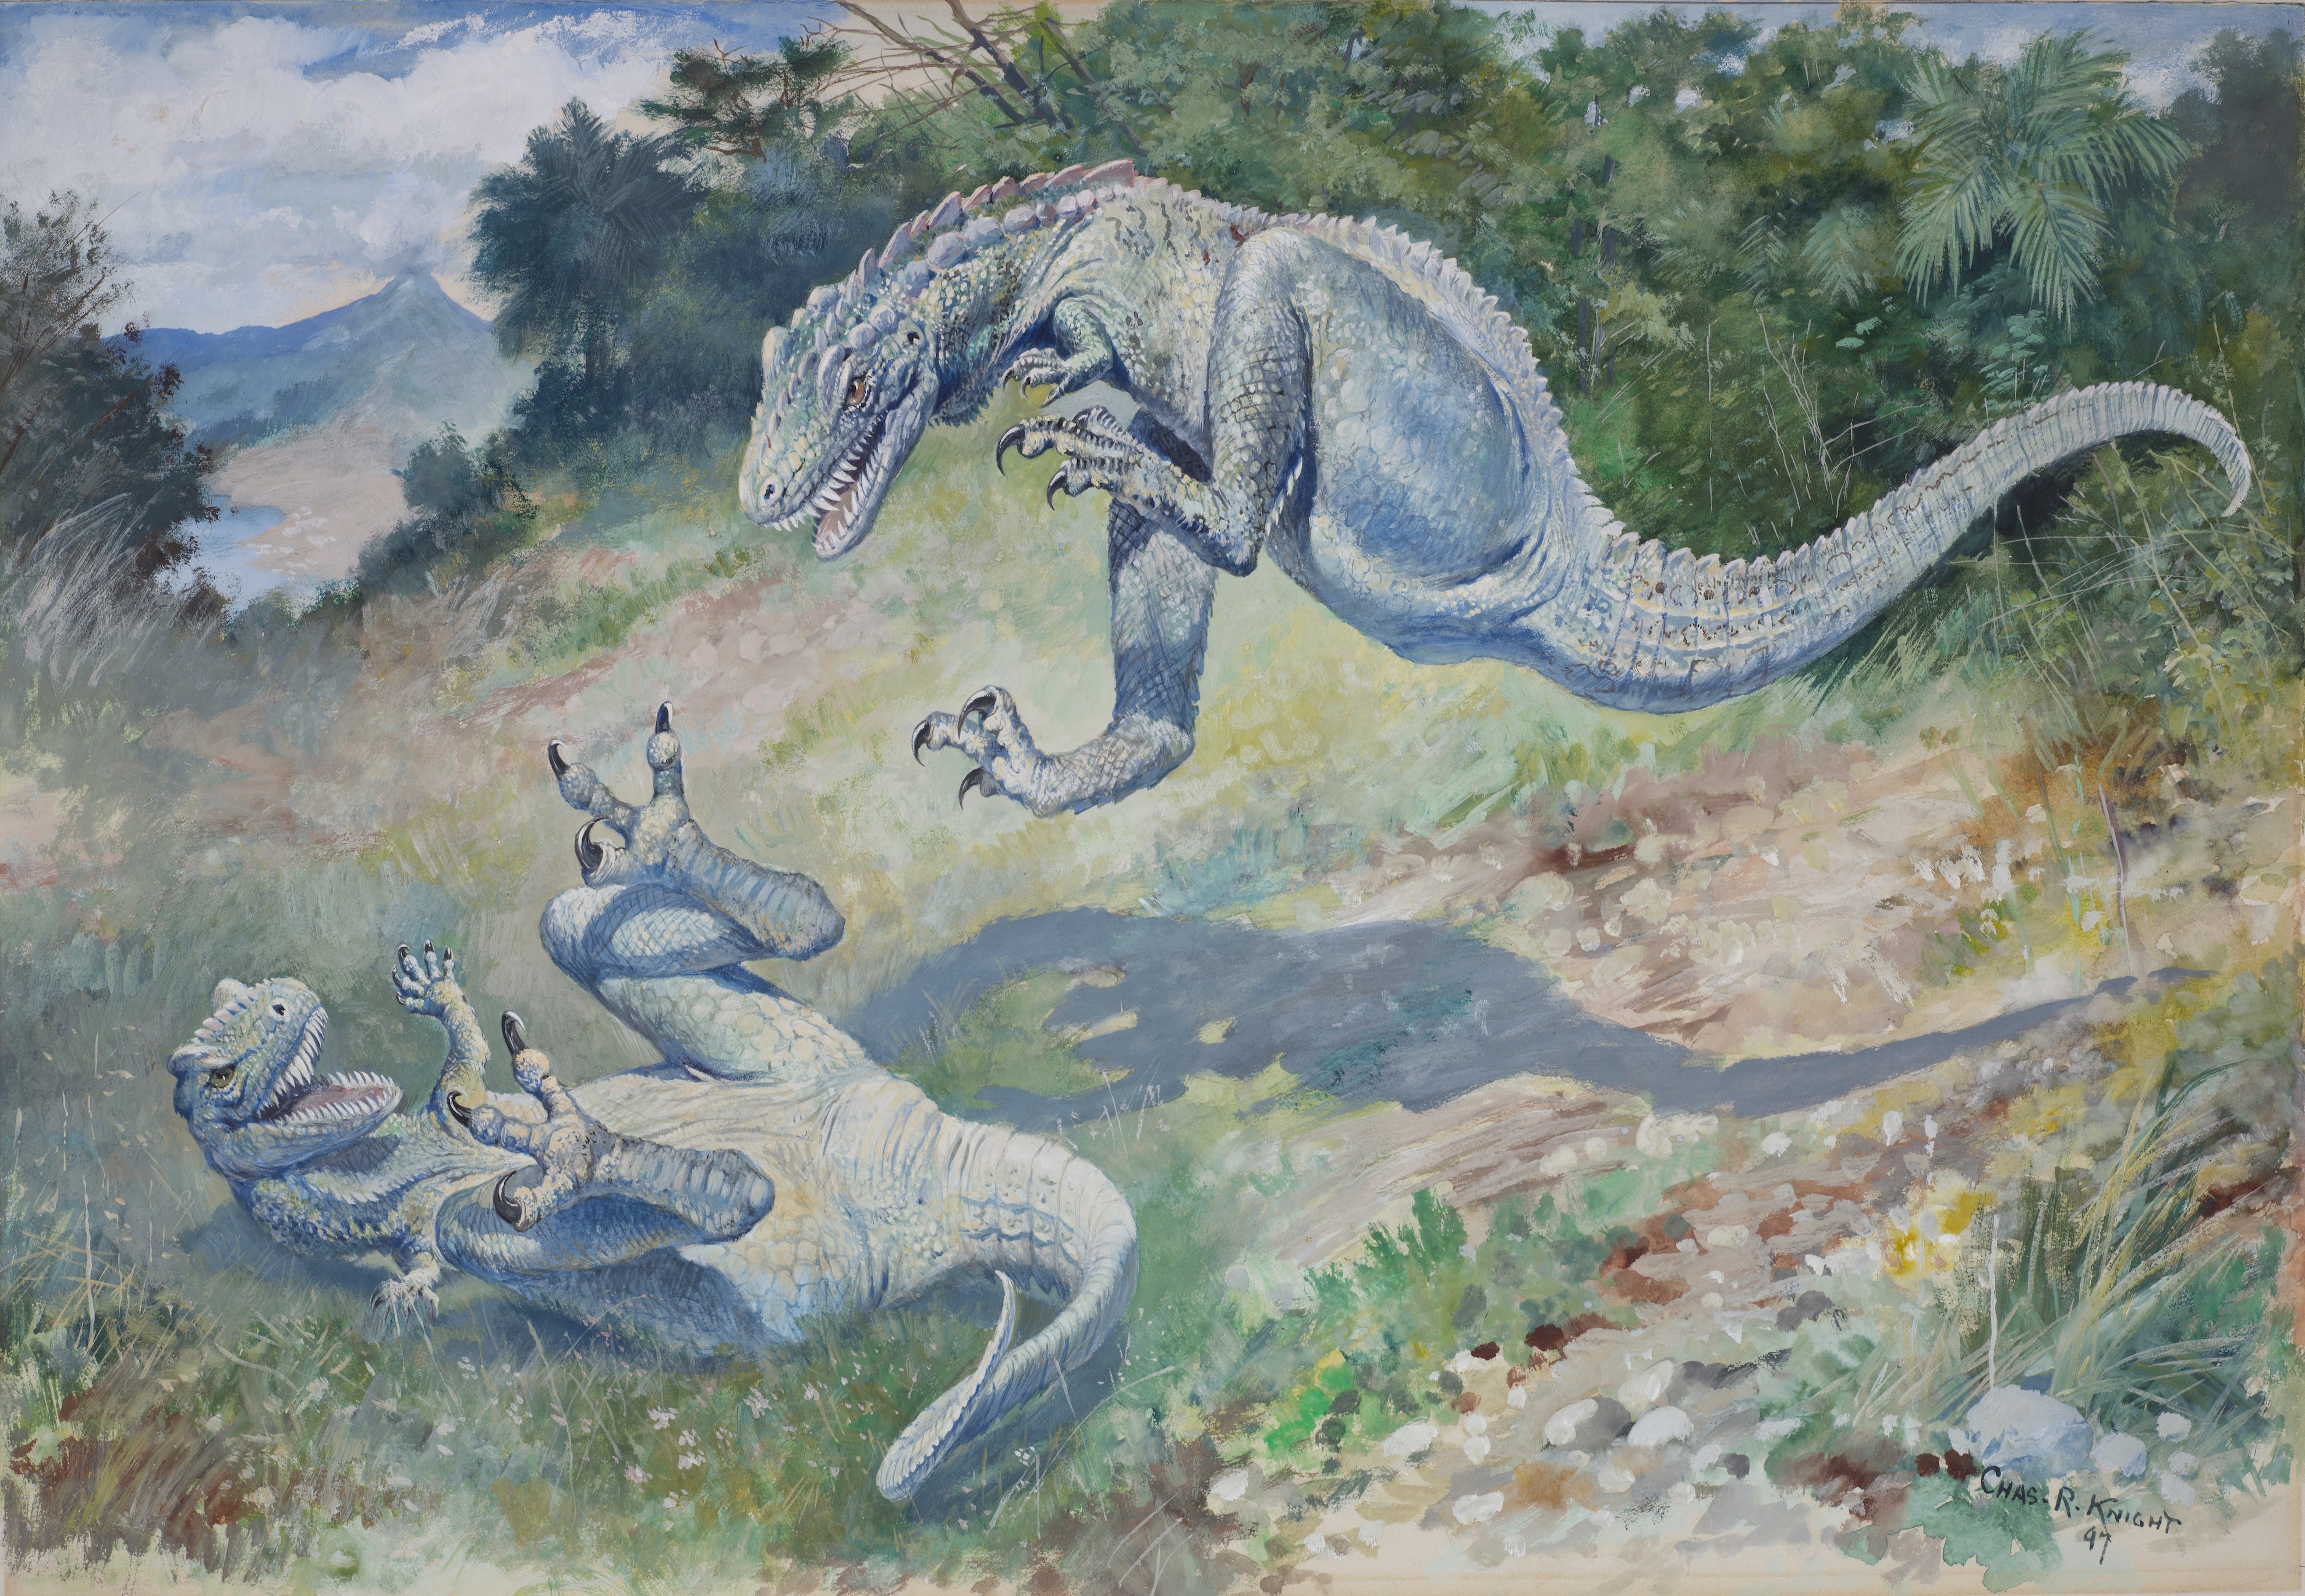 チャールズ・R・ナイト 「ドリプトサウルス（飛び跳ねるラエラプス）」 1897年 グアッシュ・紙 40x58cm アメリカ自然史博物館、ニューヨーク Image #100205624, American Museum of Natural History Library.